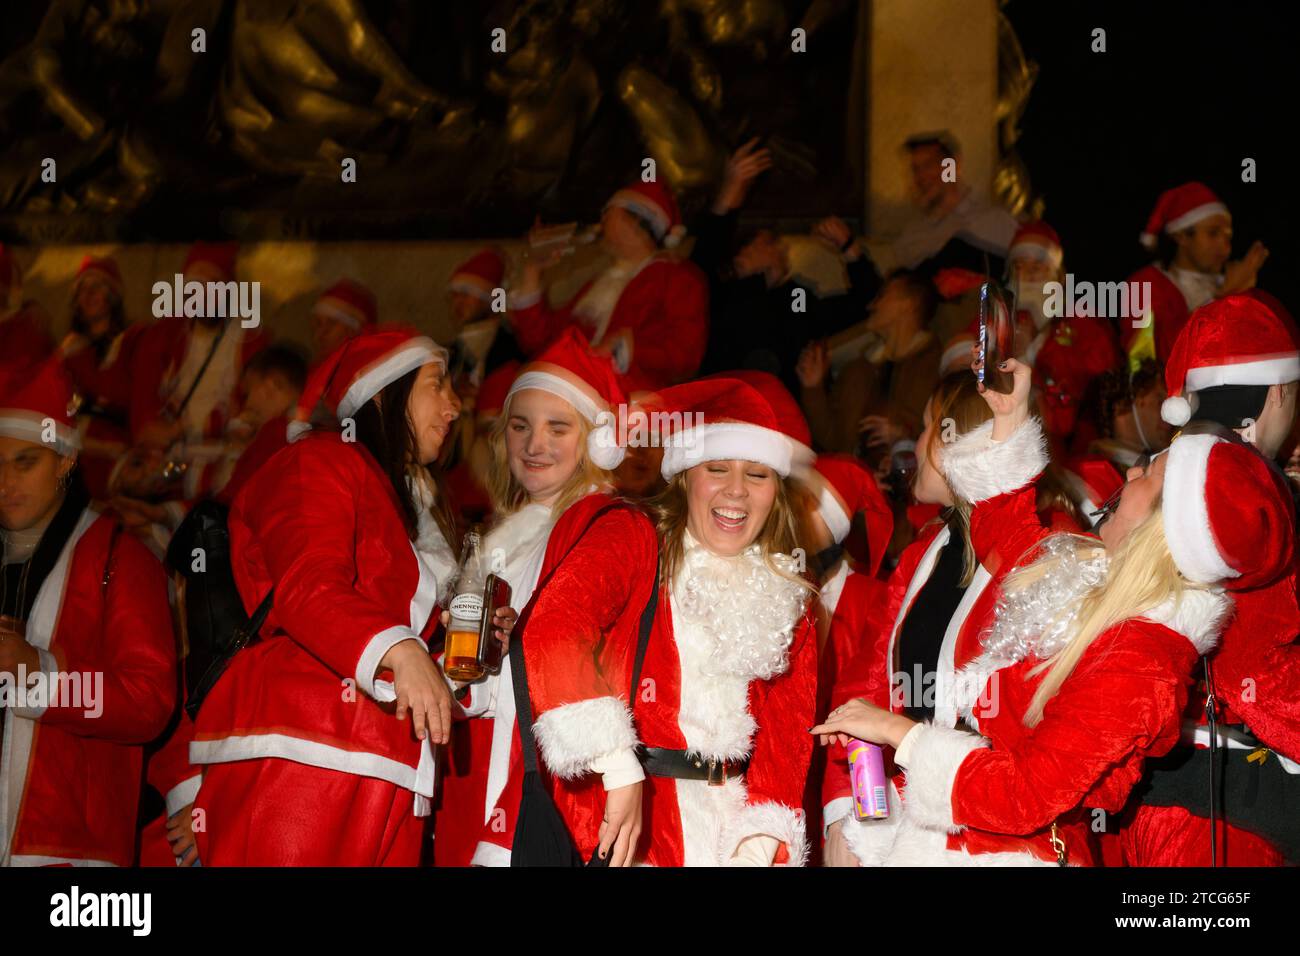 Persone che prendono parte a SantaCon a Trafalgar Square, che prevede di vestirsi da Babbo Natale e poi uscire in città per diffondere l'allegria natalizia. La Foto Stock